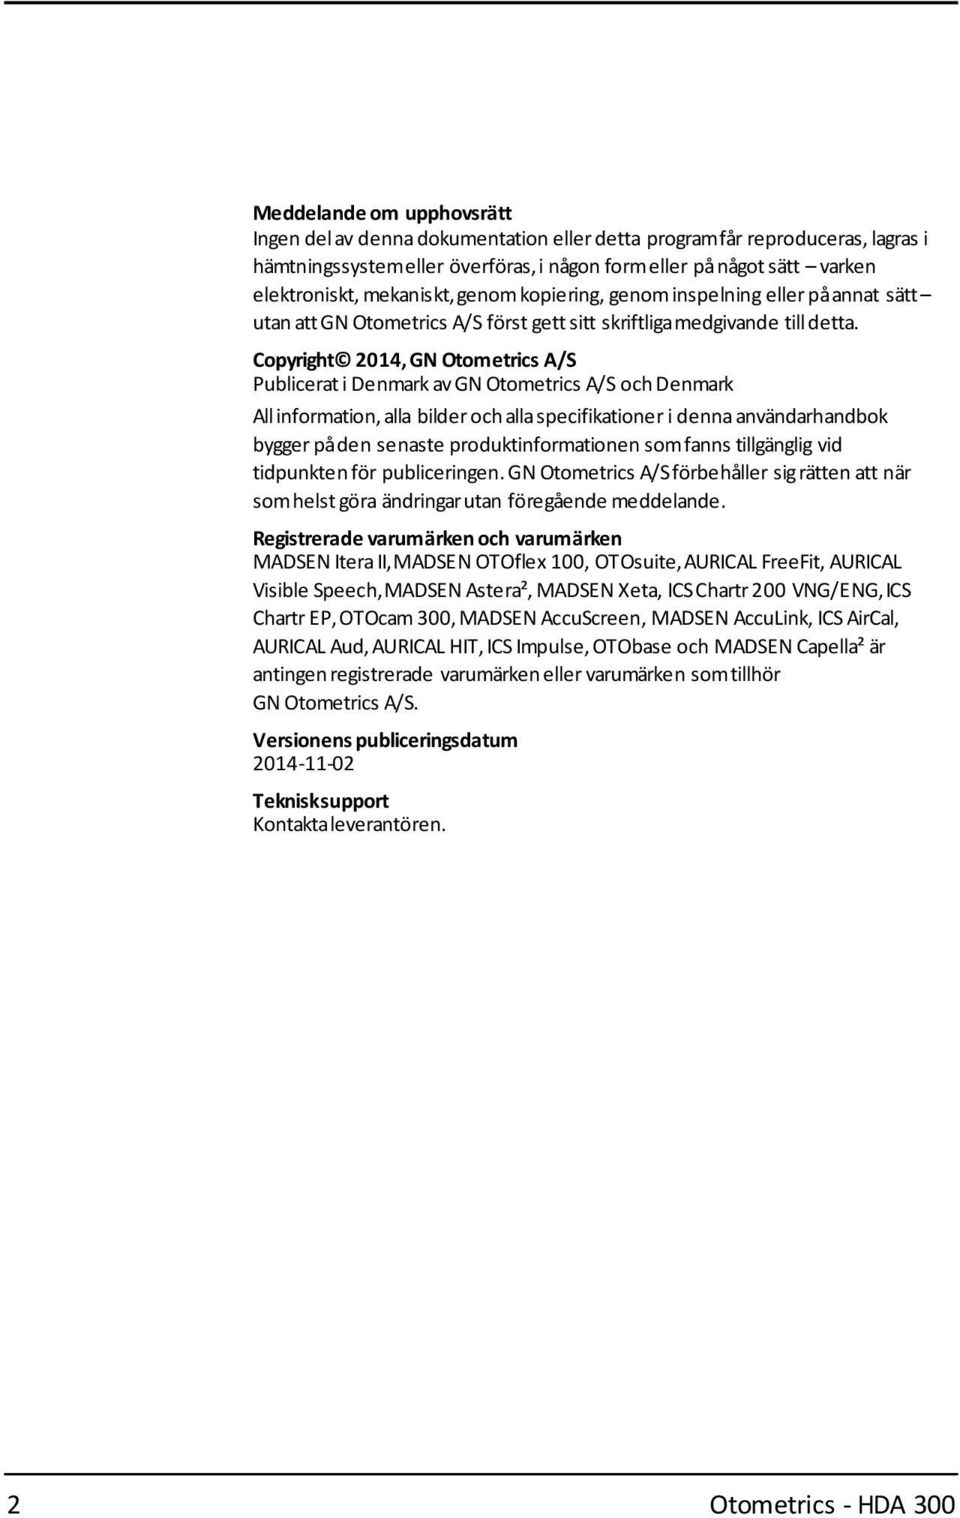 Copyright 2014, GN Otometrics A/S Publicerati Denmark avgn Otometrics A/S och Denmark Allinformation, alla bilder och allaspecifikationer i dennaanvändarhandbok bygger påden senaste